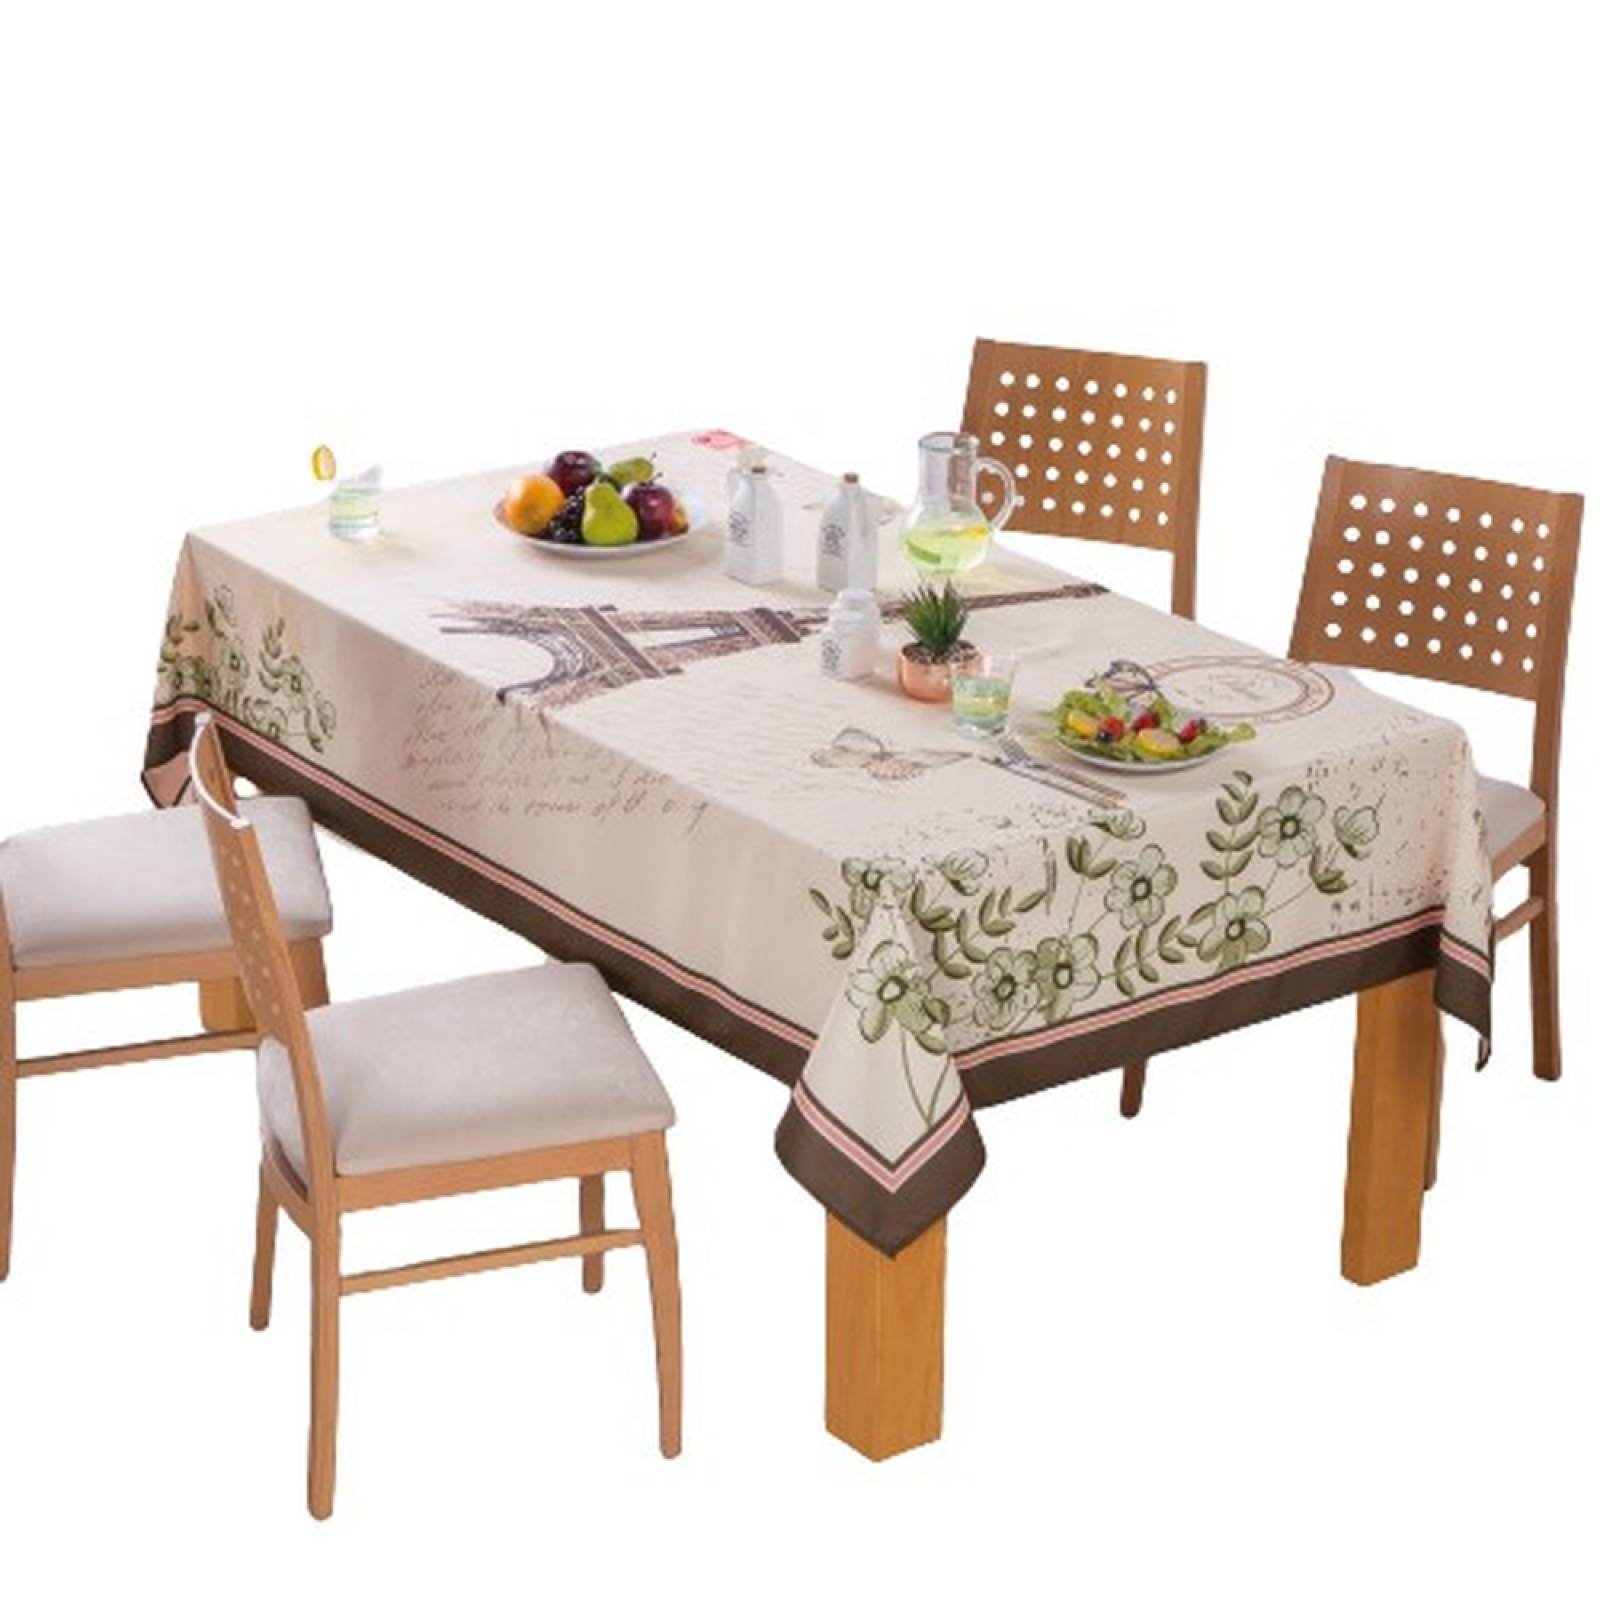 Mantel Rectangular Frutal Vianney Friutal; mantel para mesa; rectangular